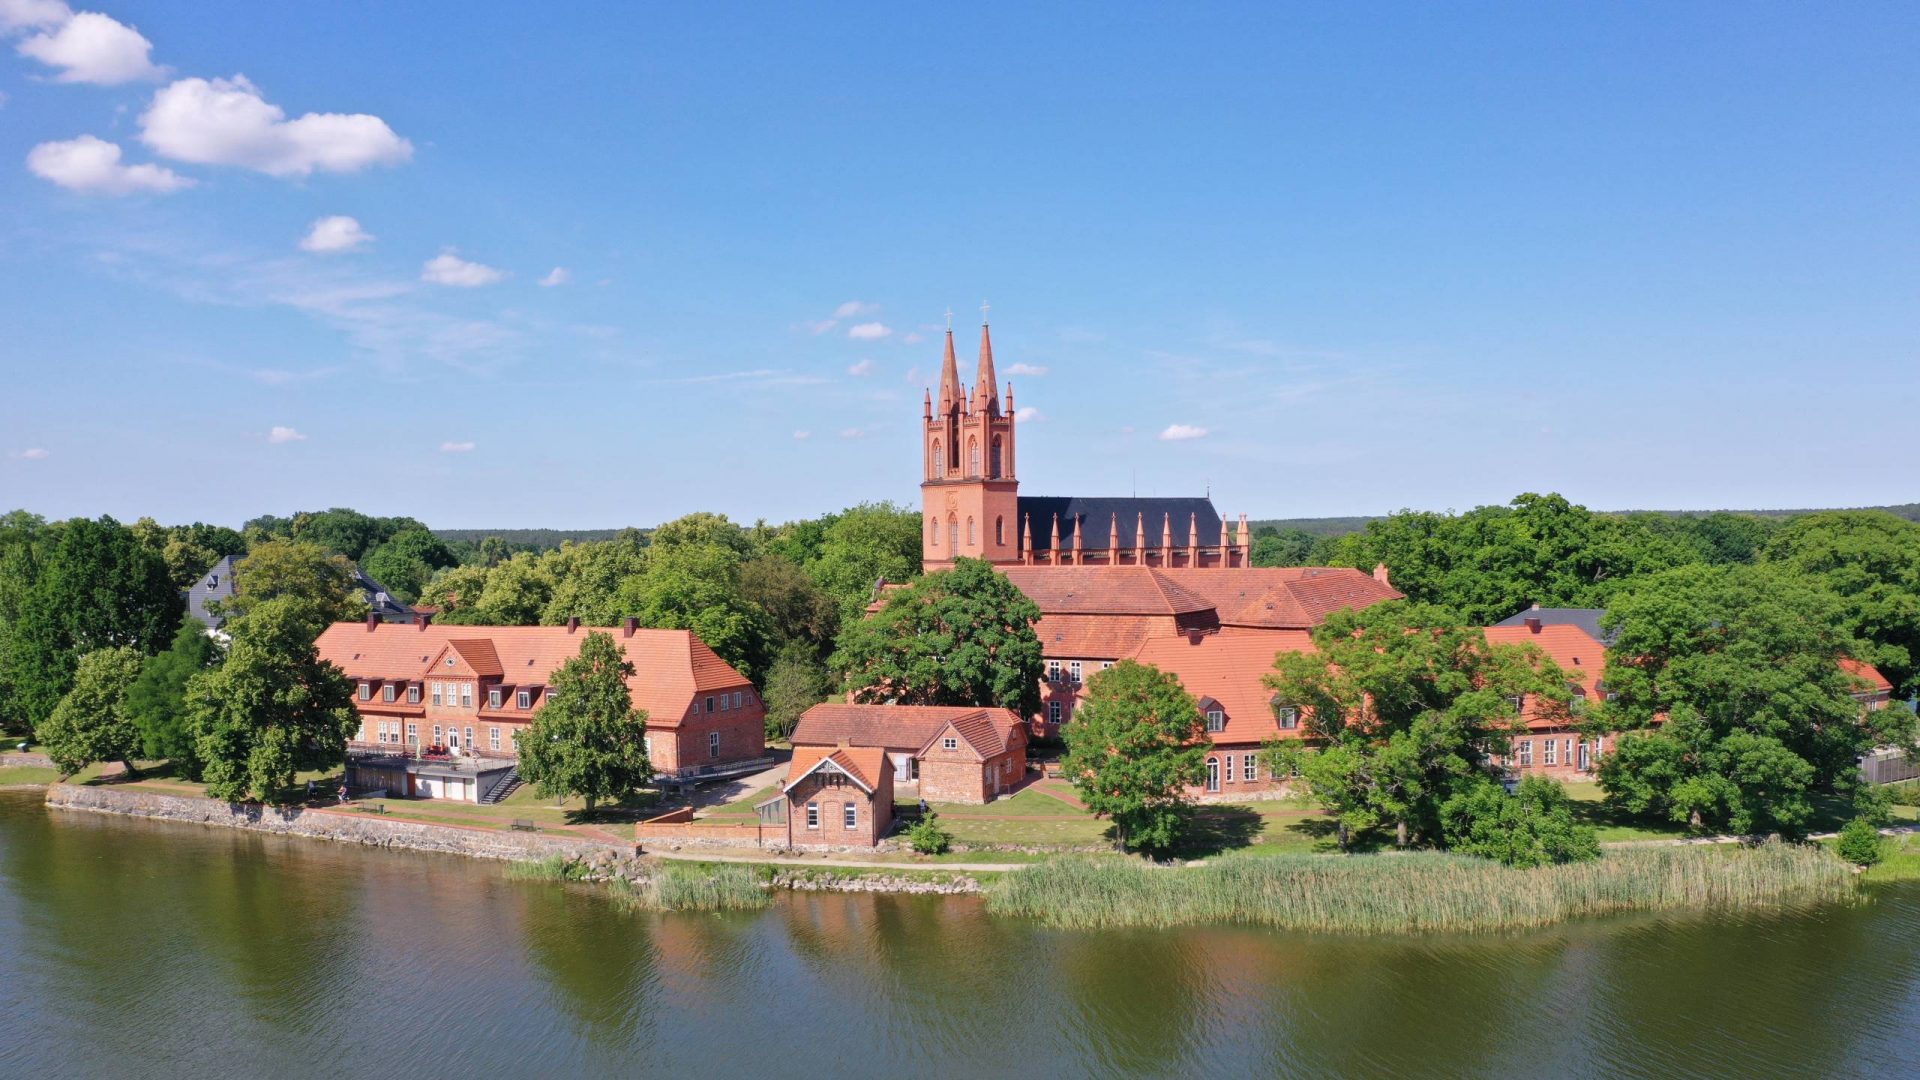 Klosterkirche Dobbertin mit zwei Kirchtürmen und weiteren Gebäuden am See